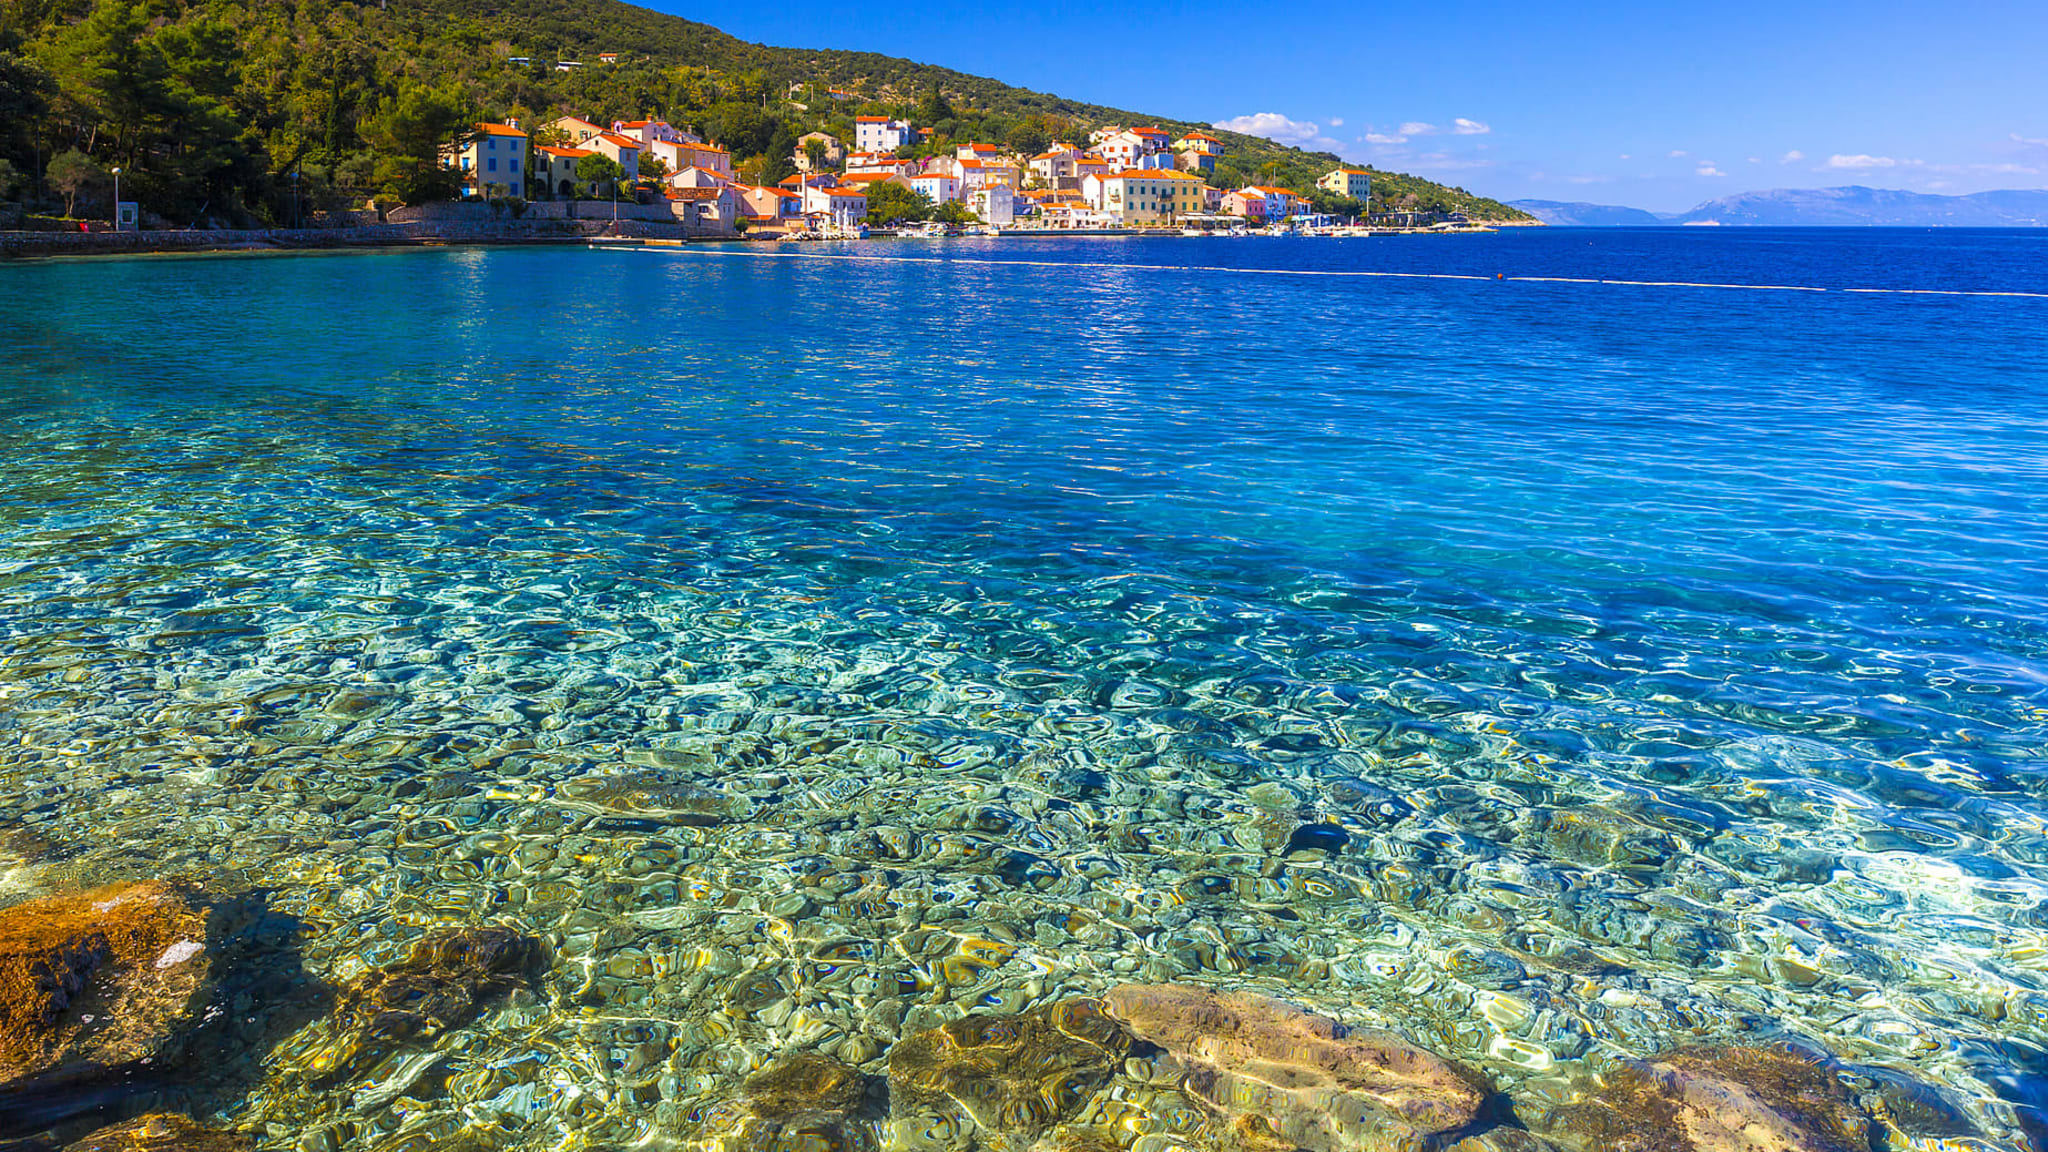 Bucht von Valun, Cres, Kroatien ©Olimpio Fantuz/HUBER IMAGES